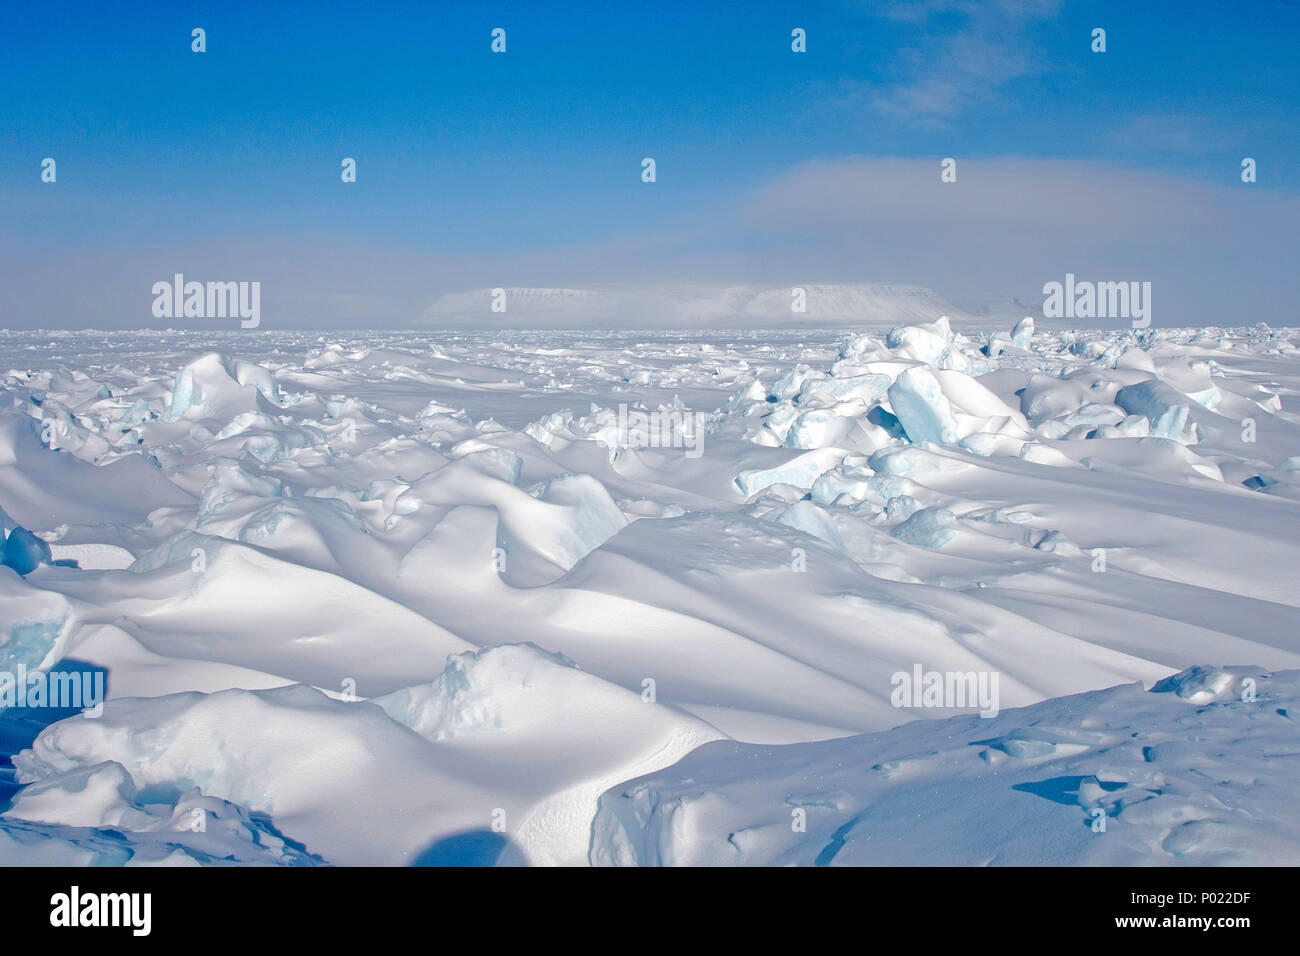 Arktische Landschaft im Territorium Nunavut, Kanada | Arktischen Zone im Nunavut Territory, Kanada Stockfoto